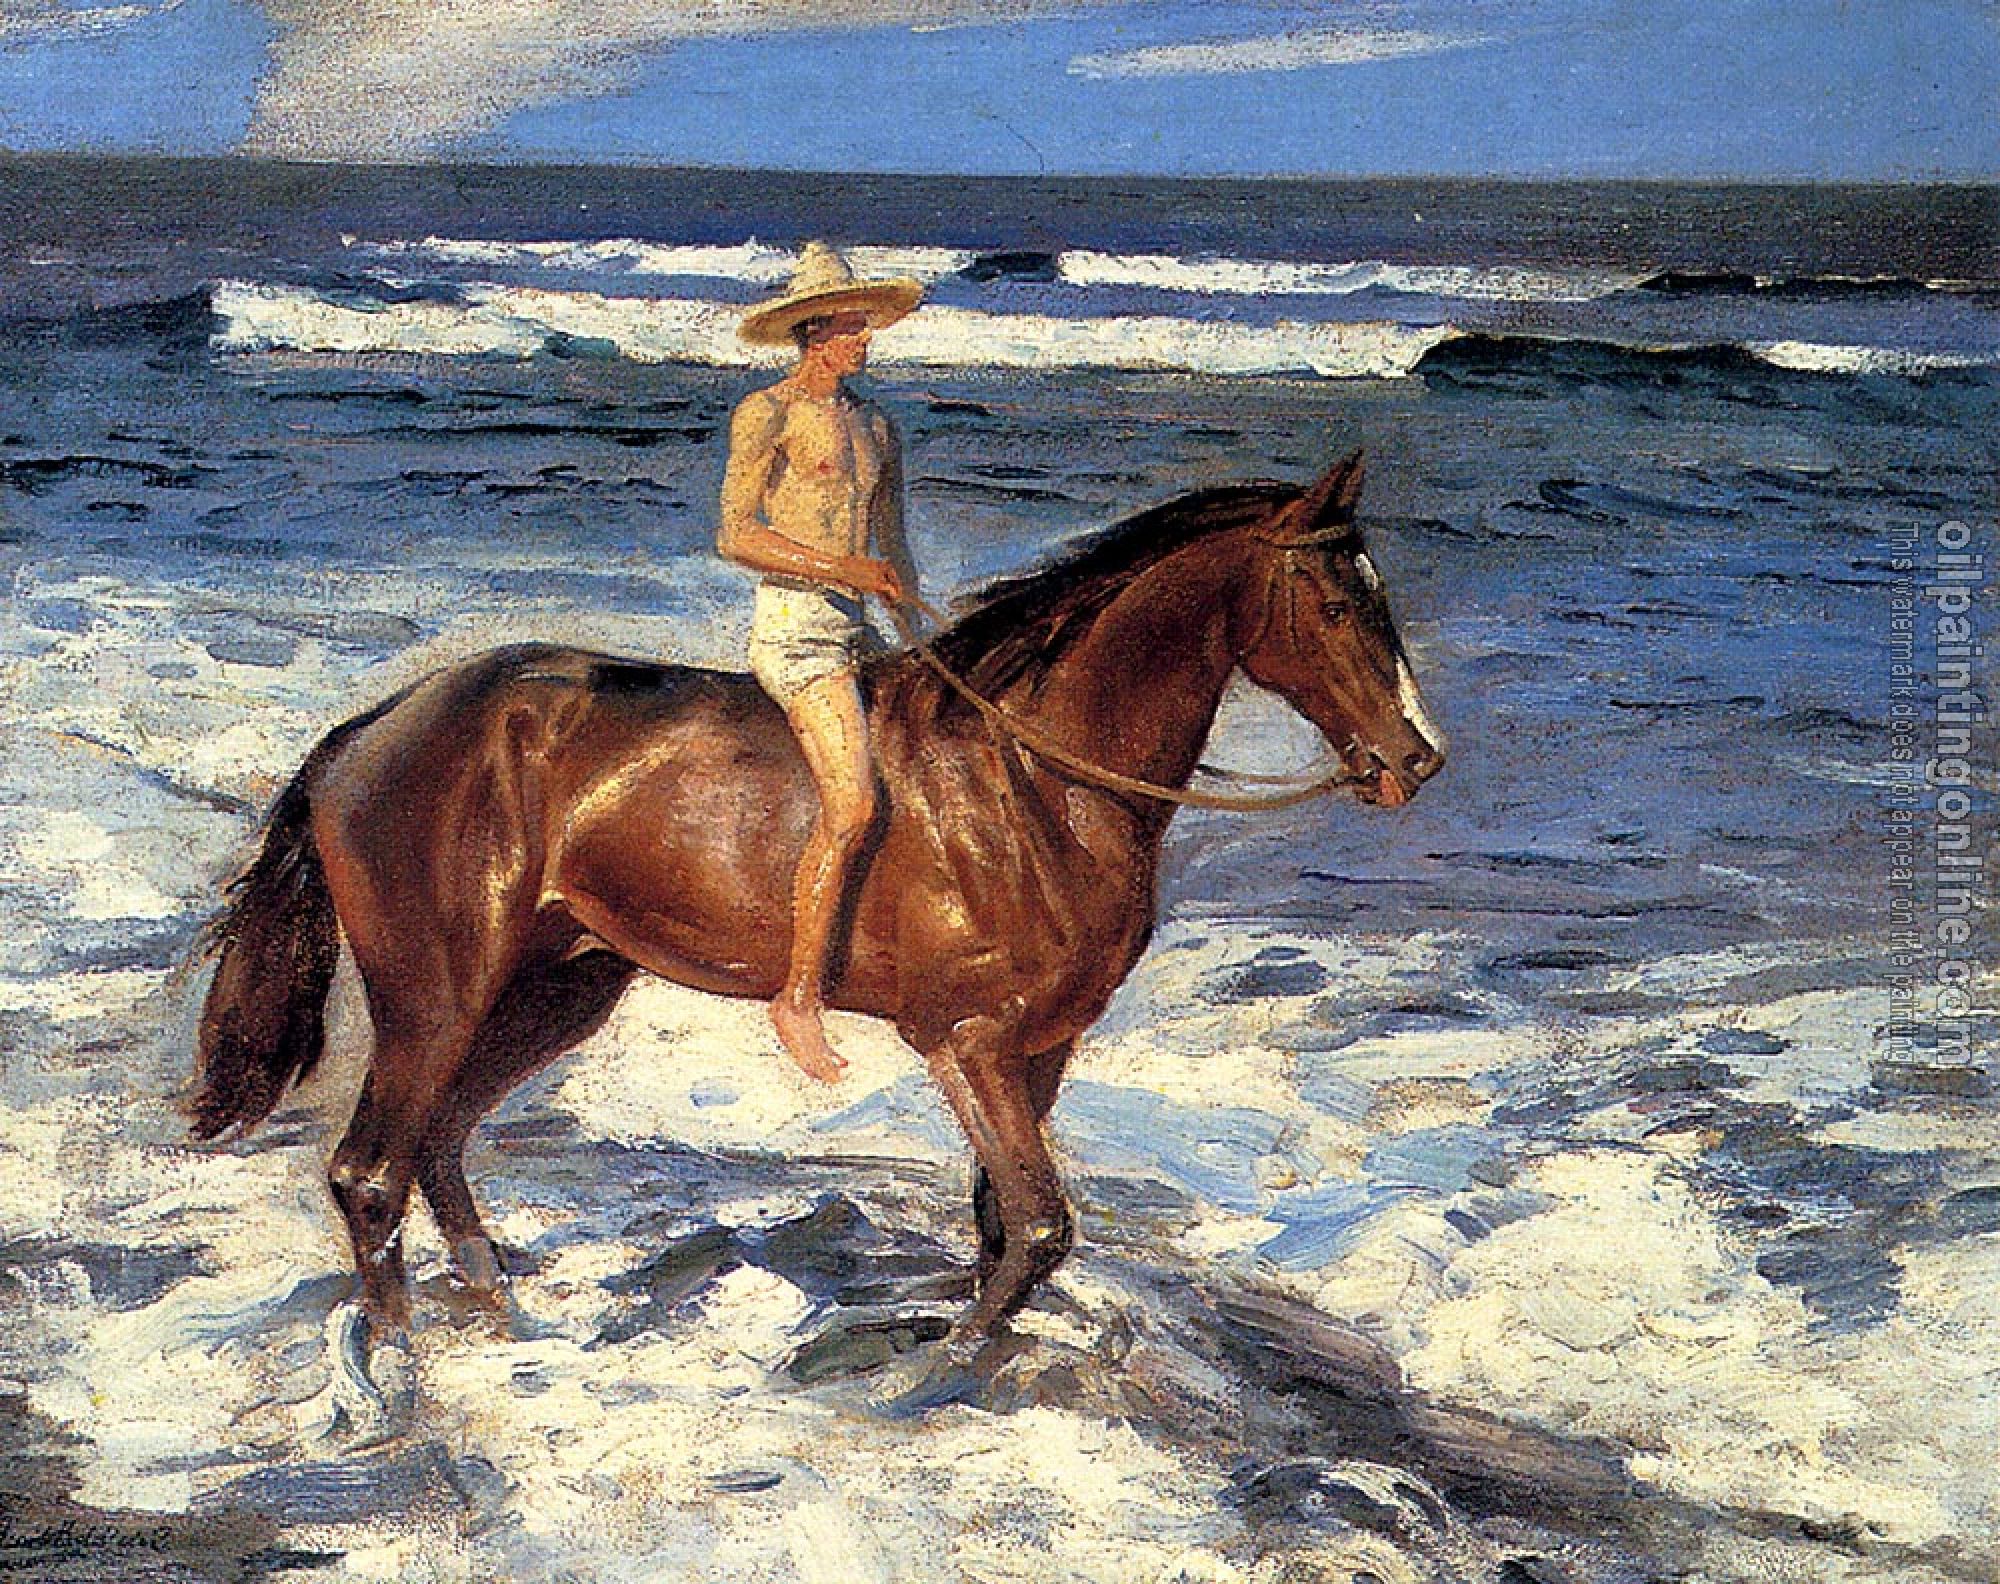 Benito Rebolledo Correa - A Ride Along The Shore